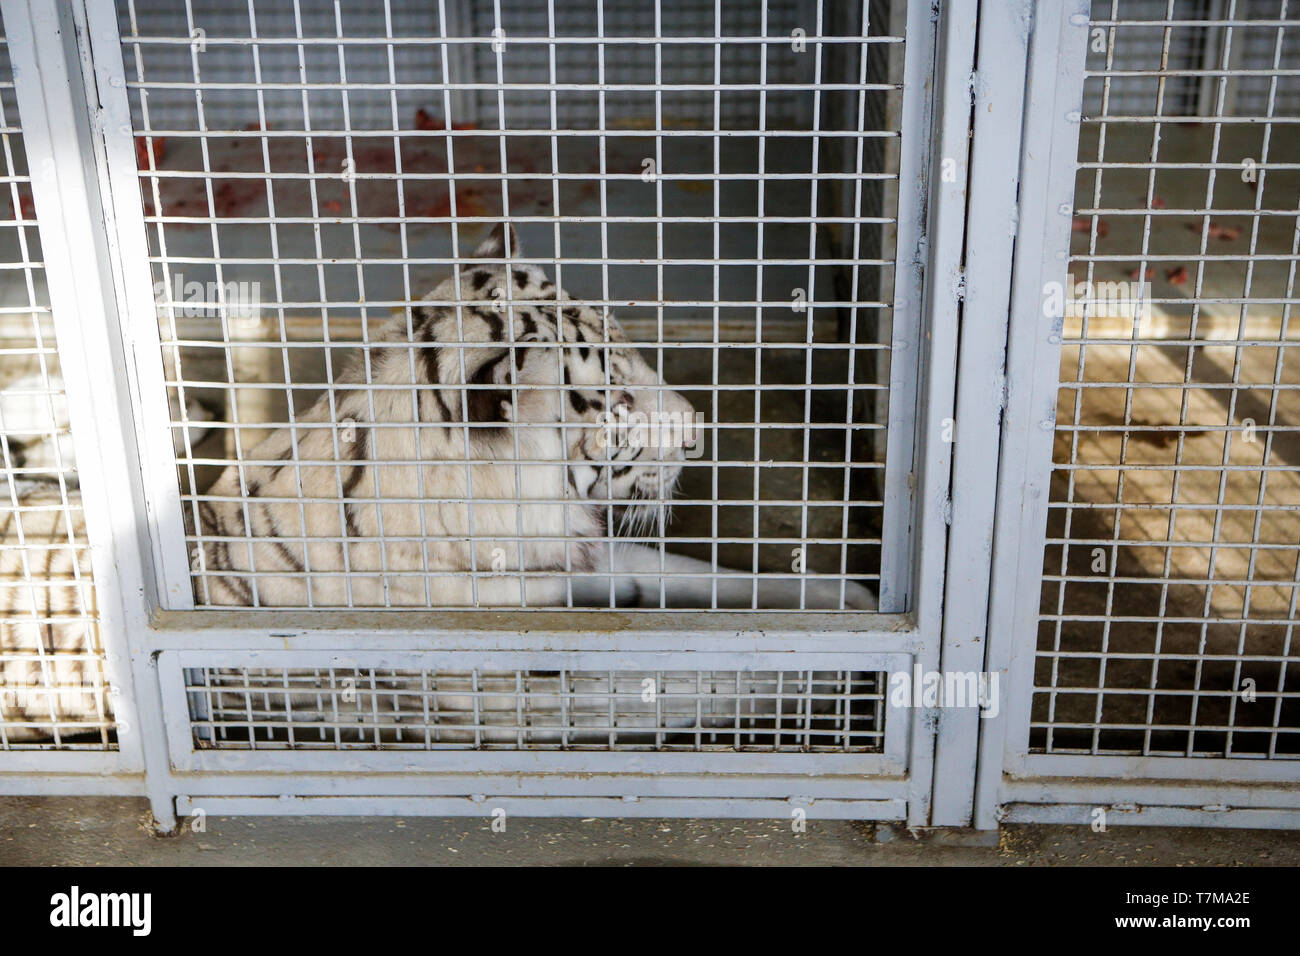 Weißer Tiger im Käfig in einem Zirkus menagerie - Tierquälerei Stockfoto